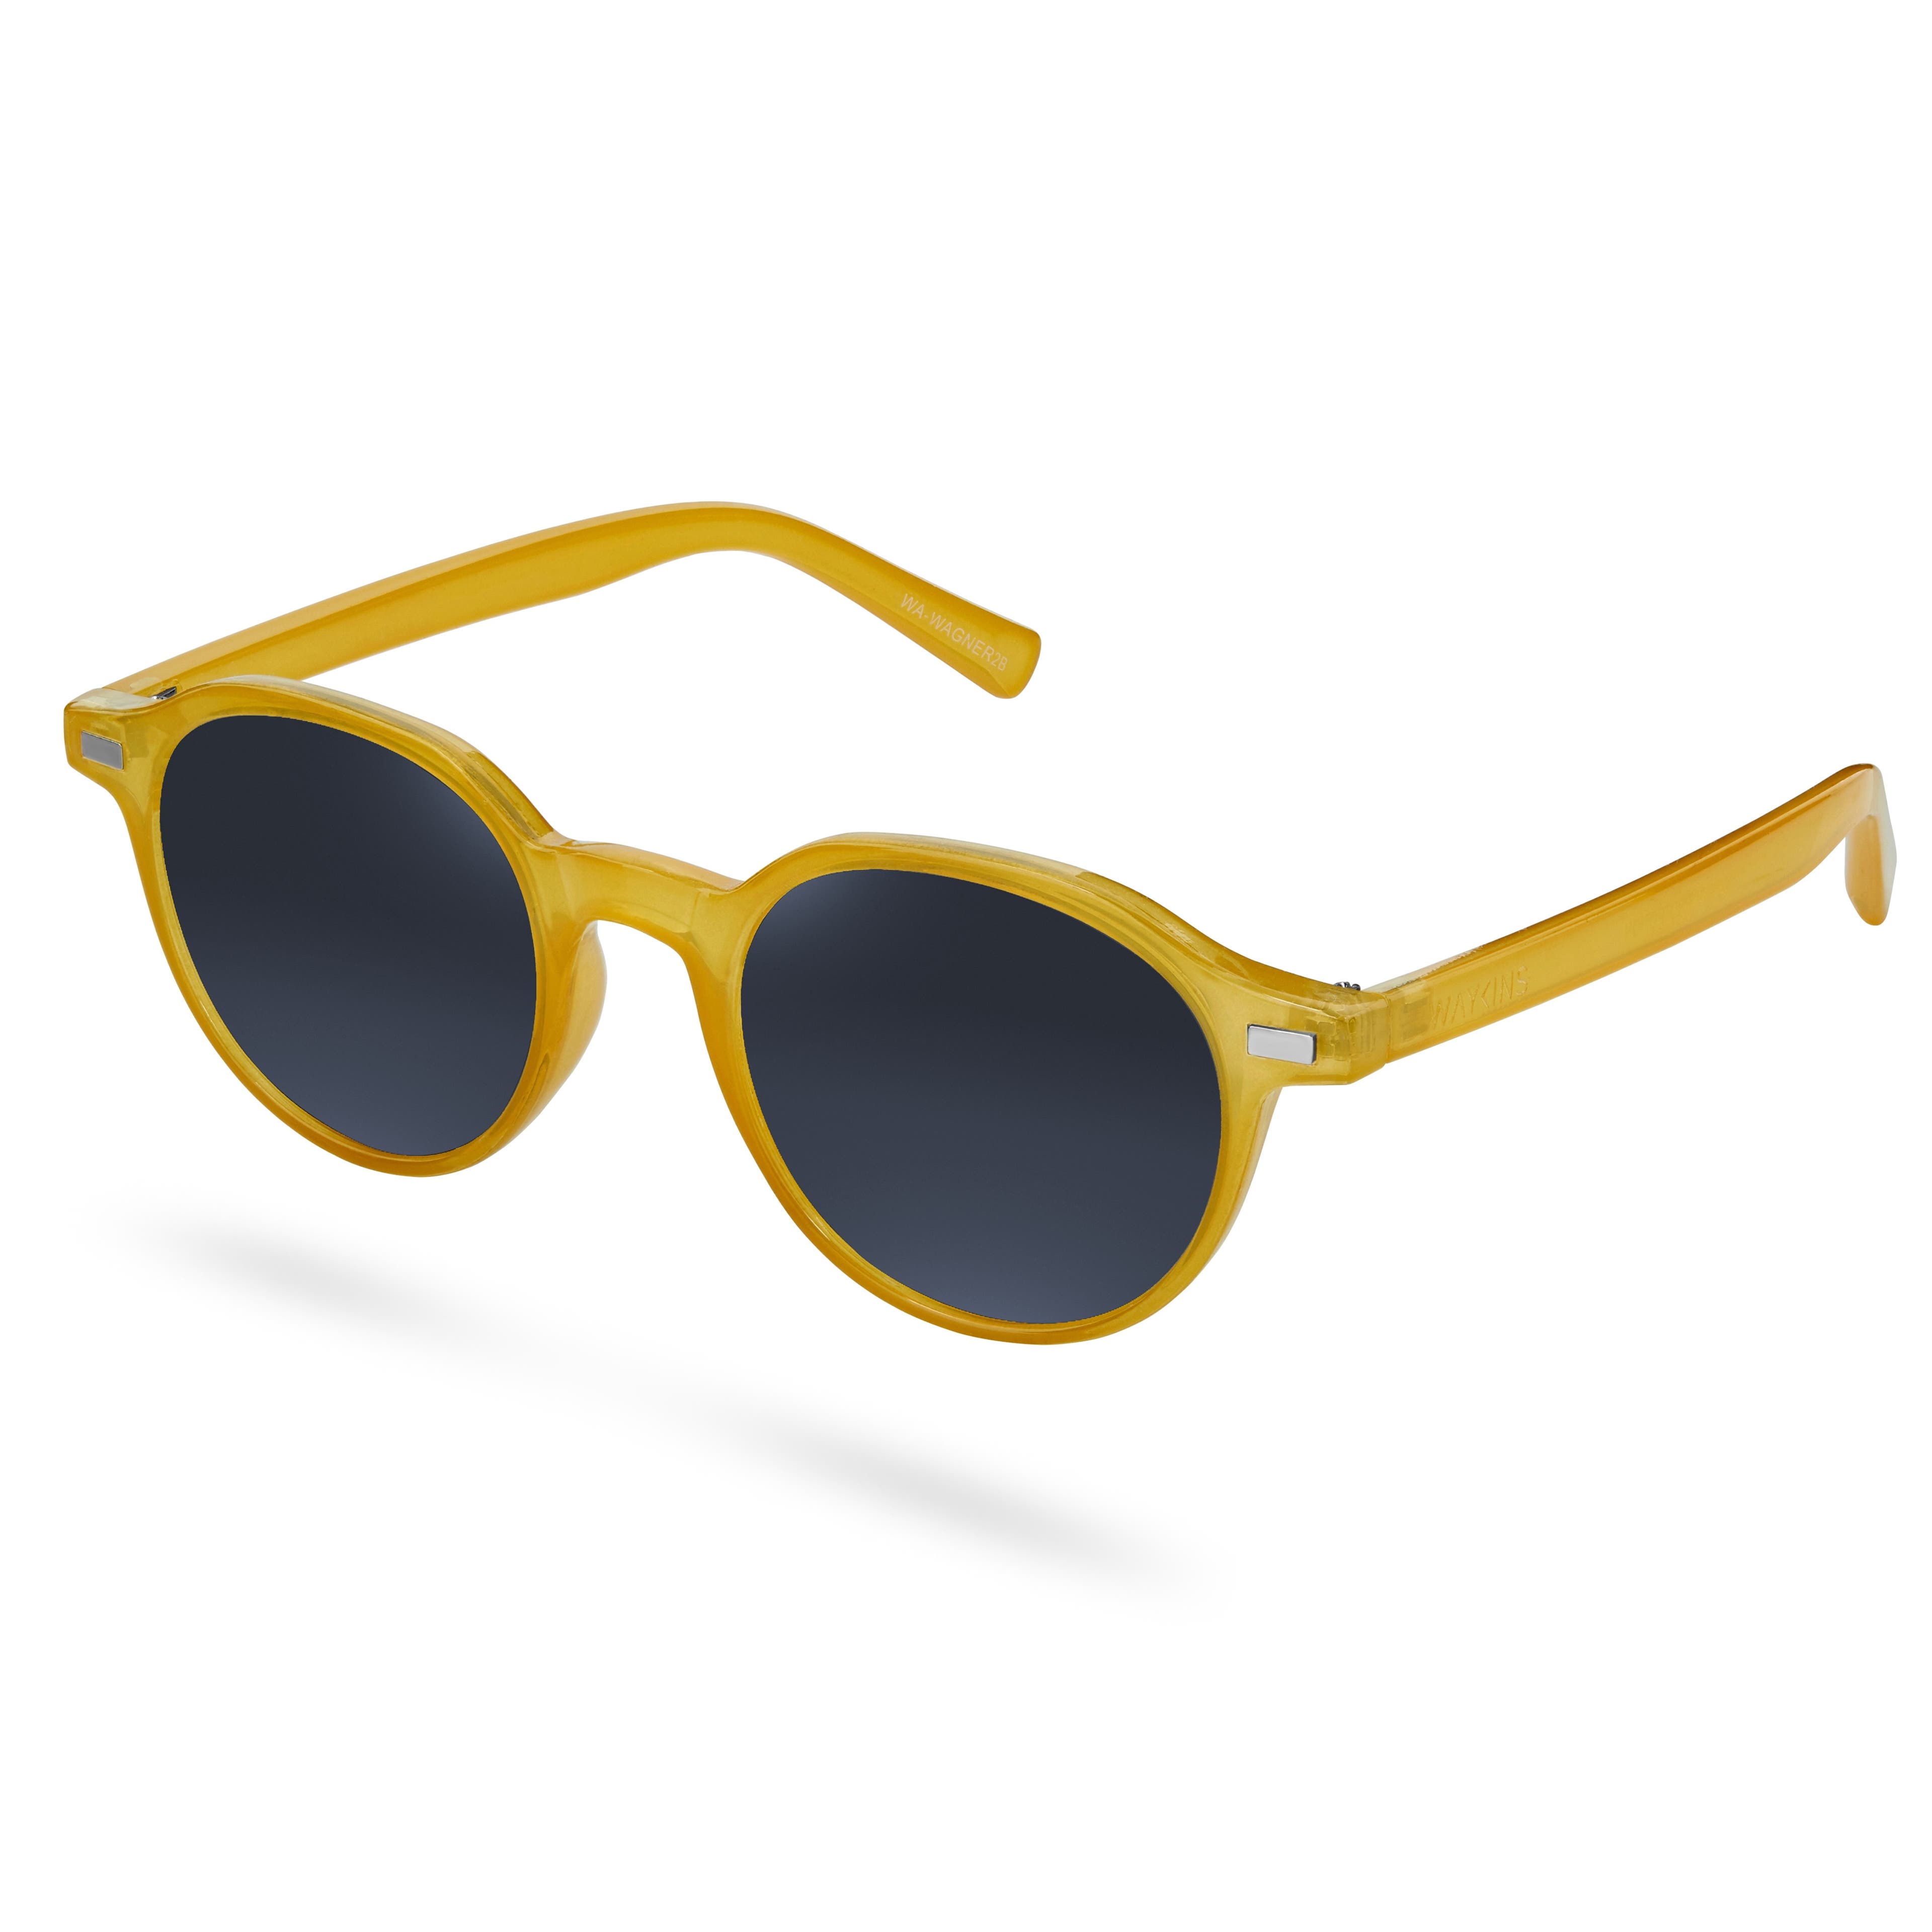 Žluté a šedé sluneční brýle Wagner Wade